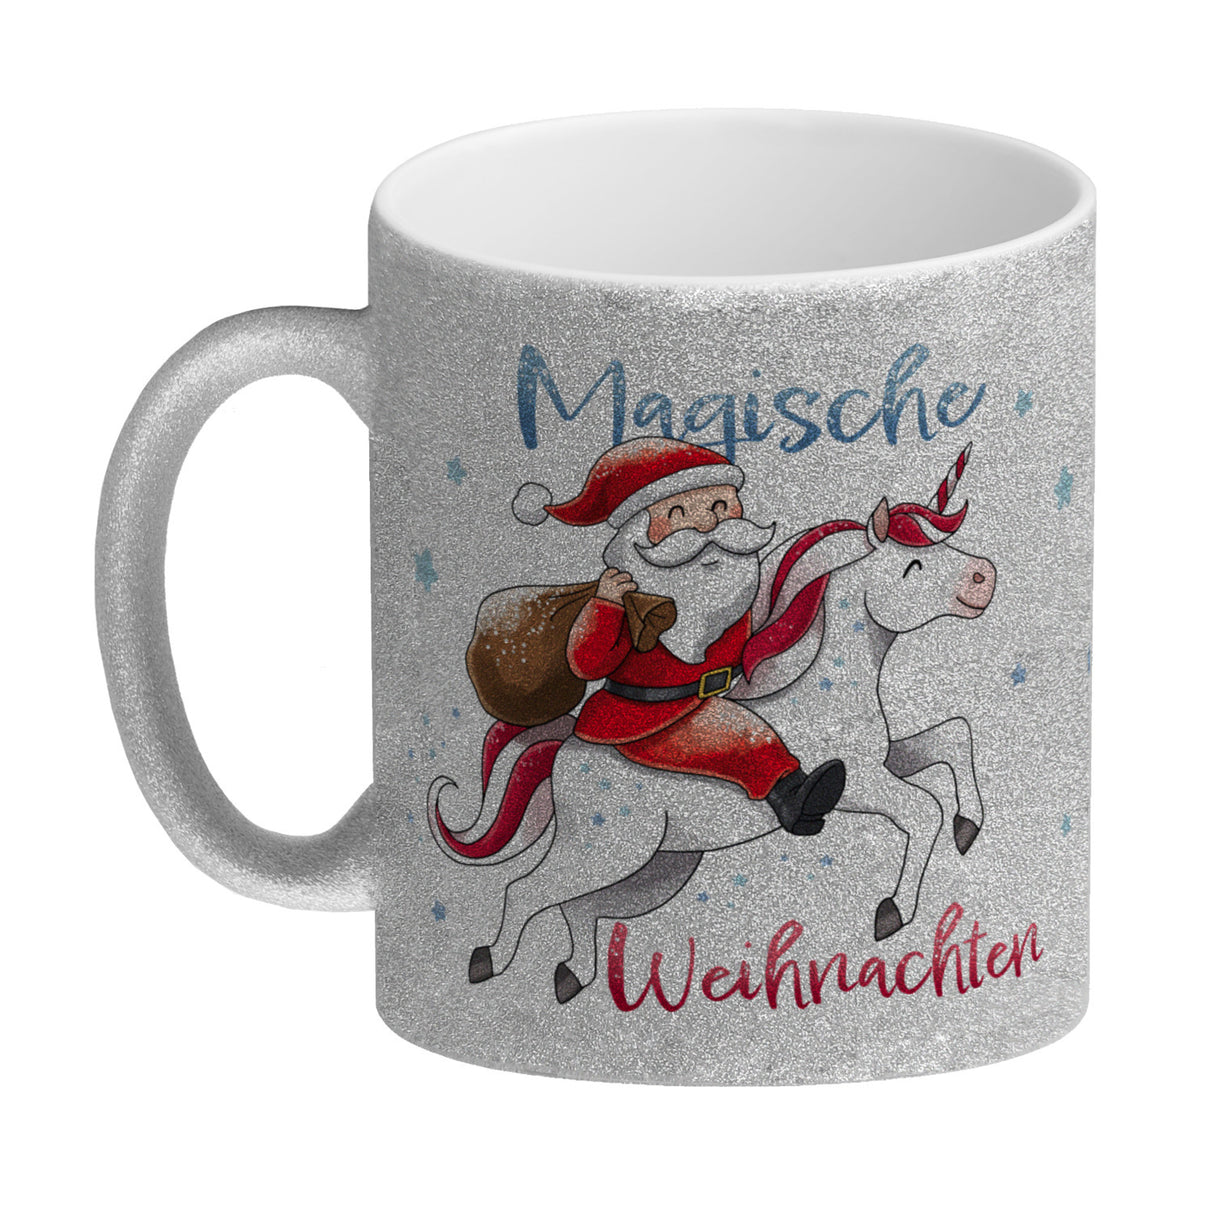 Weihnachtsmann auf Einhorn Kaffeebecher mit Spruch Magische Weihnachten